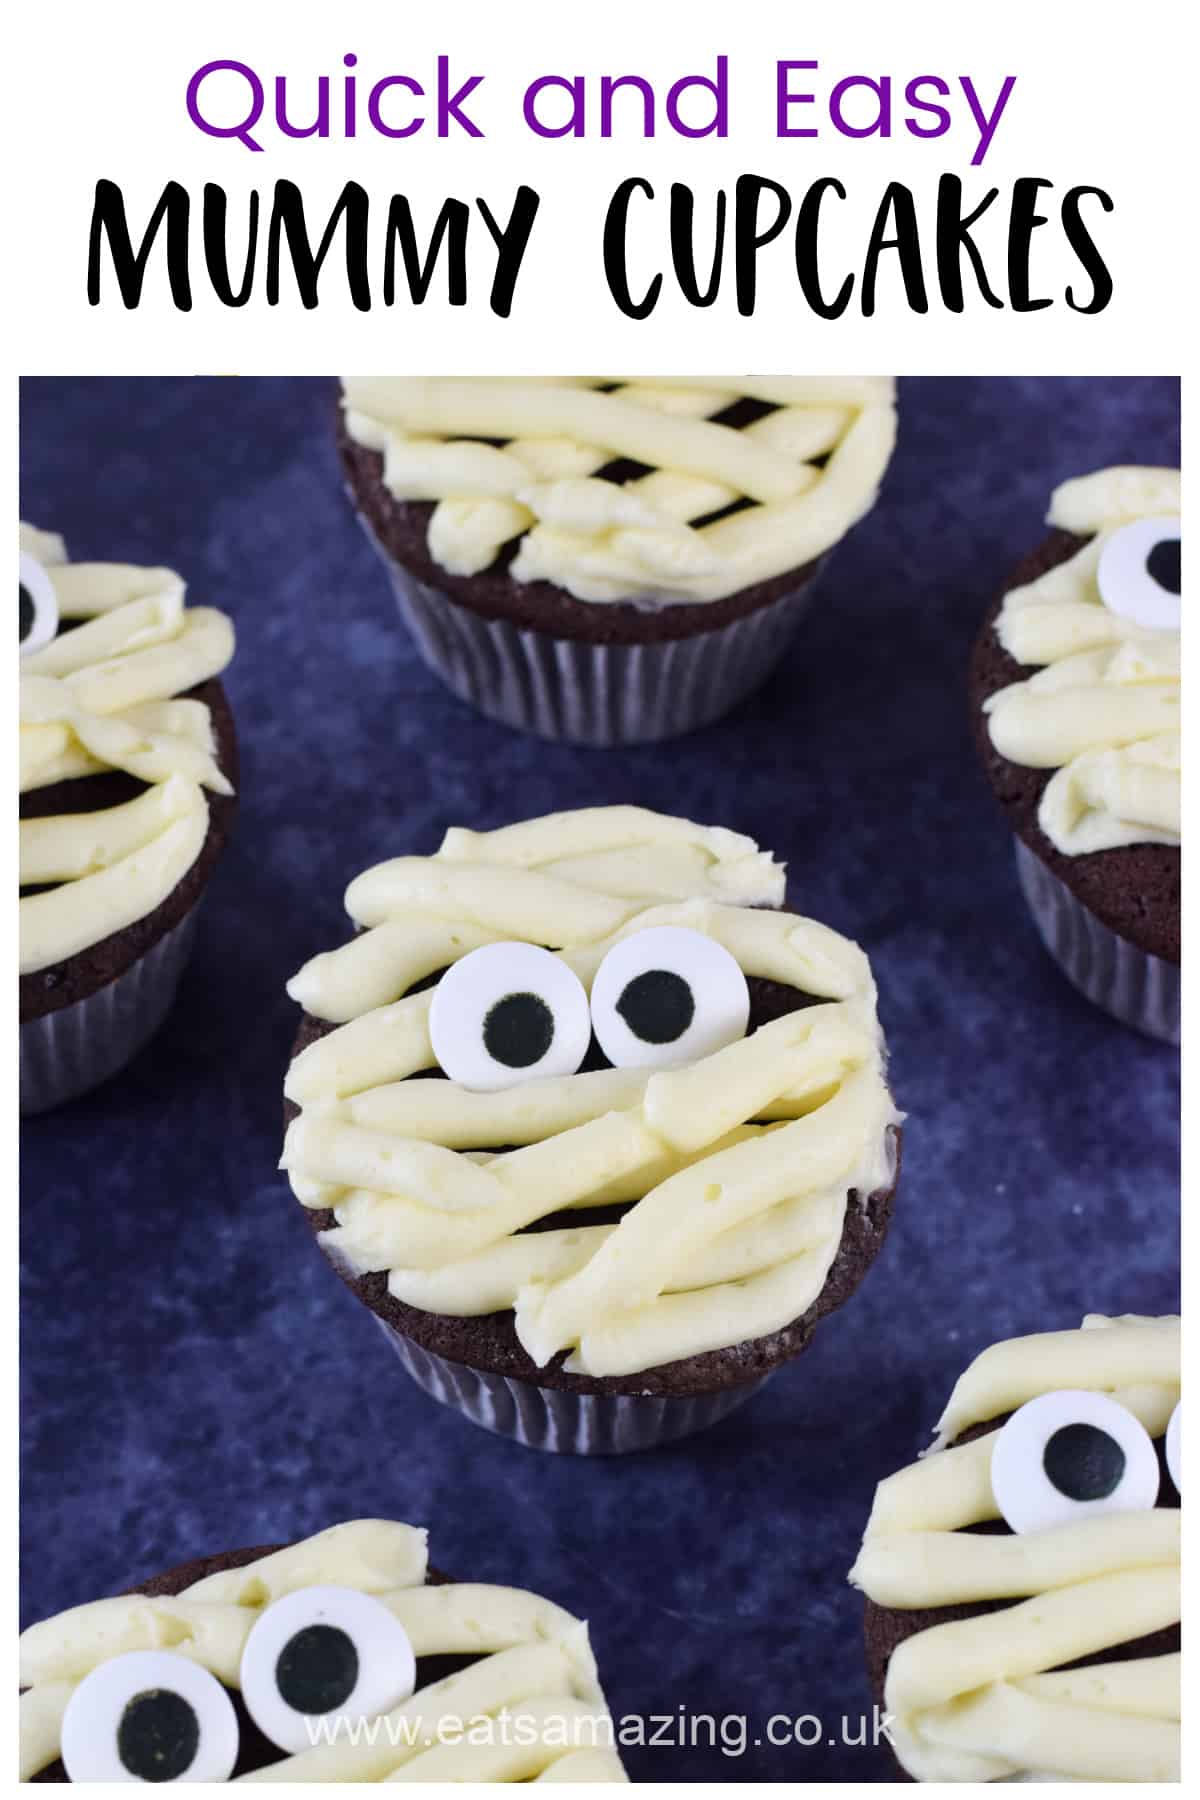 Cómo hacer una receta rápida y fácil de cupcakes de momia - Comida de fiesta de Halloween para niños